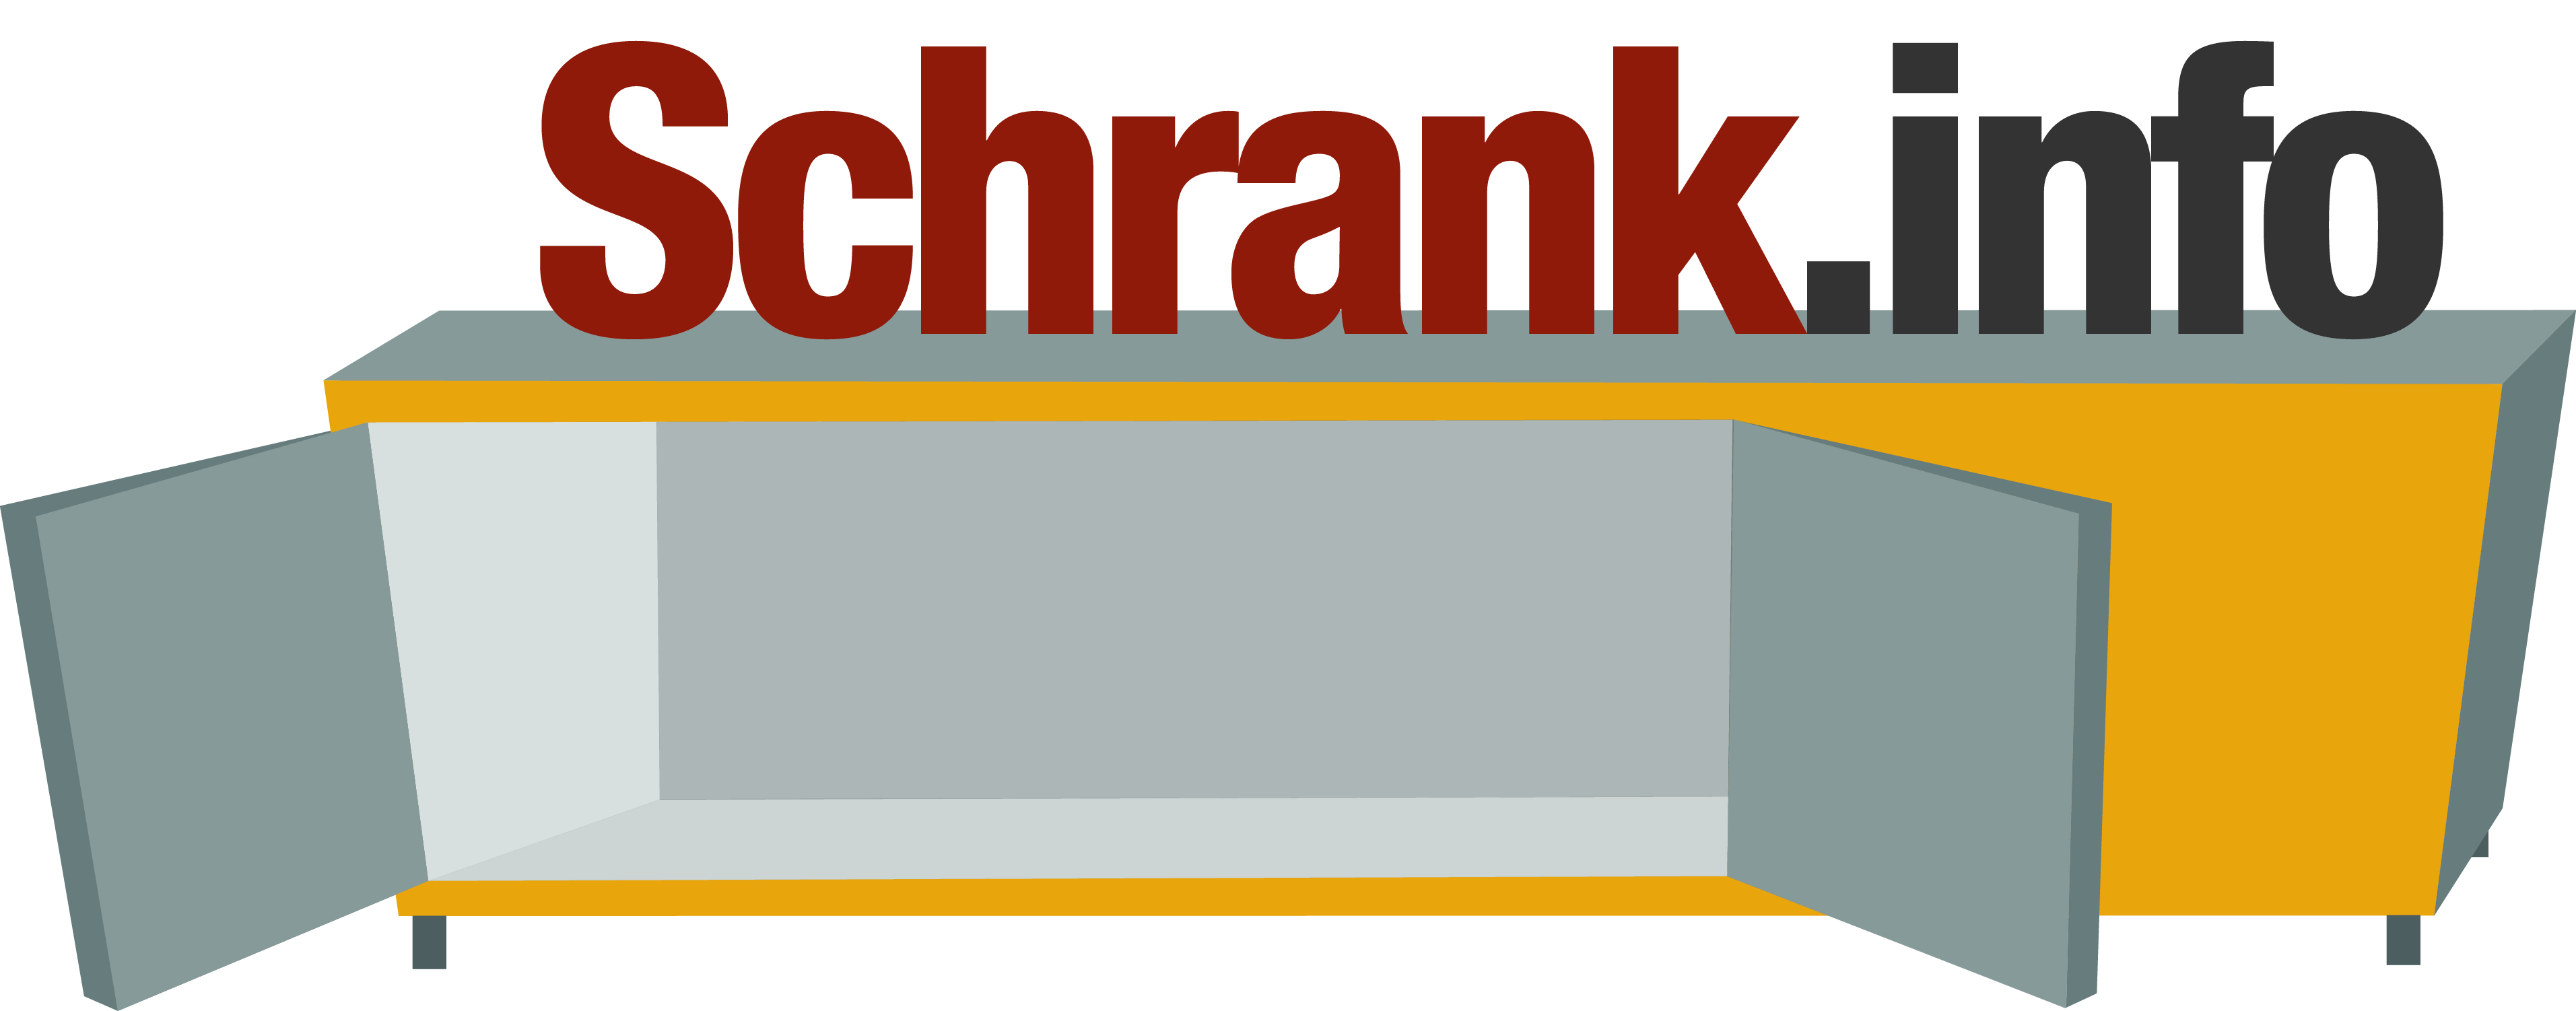 Schrank.info